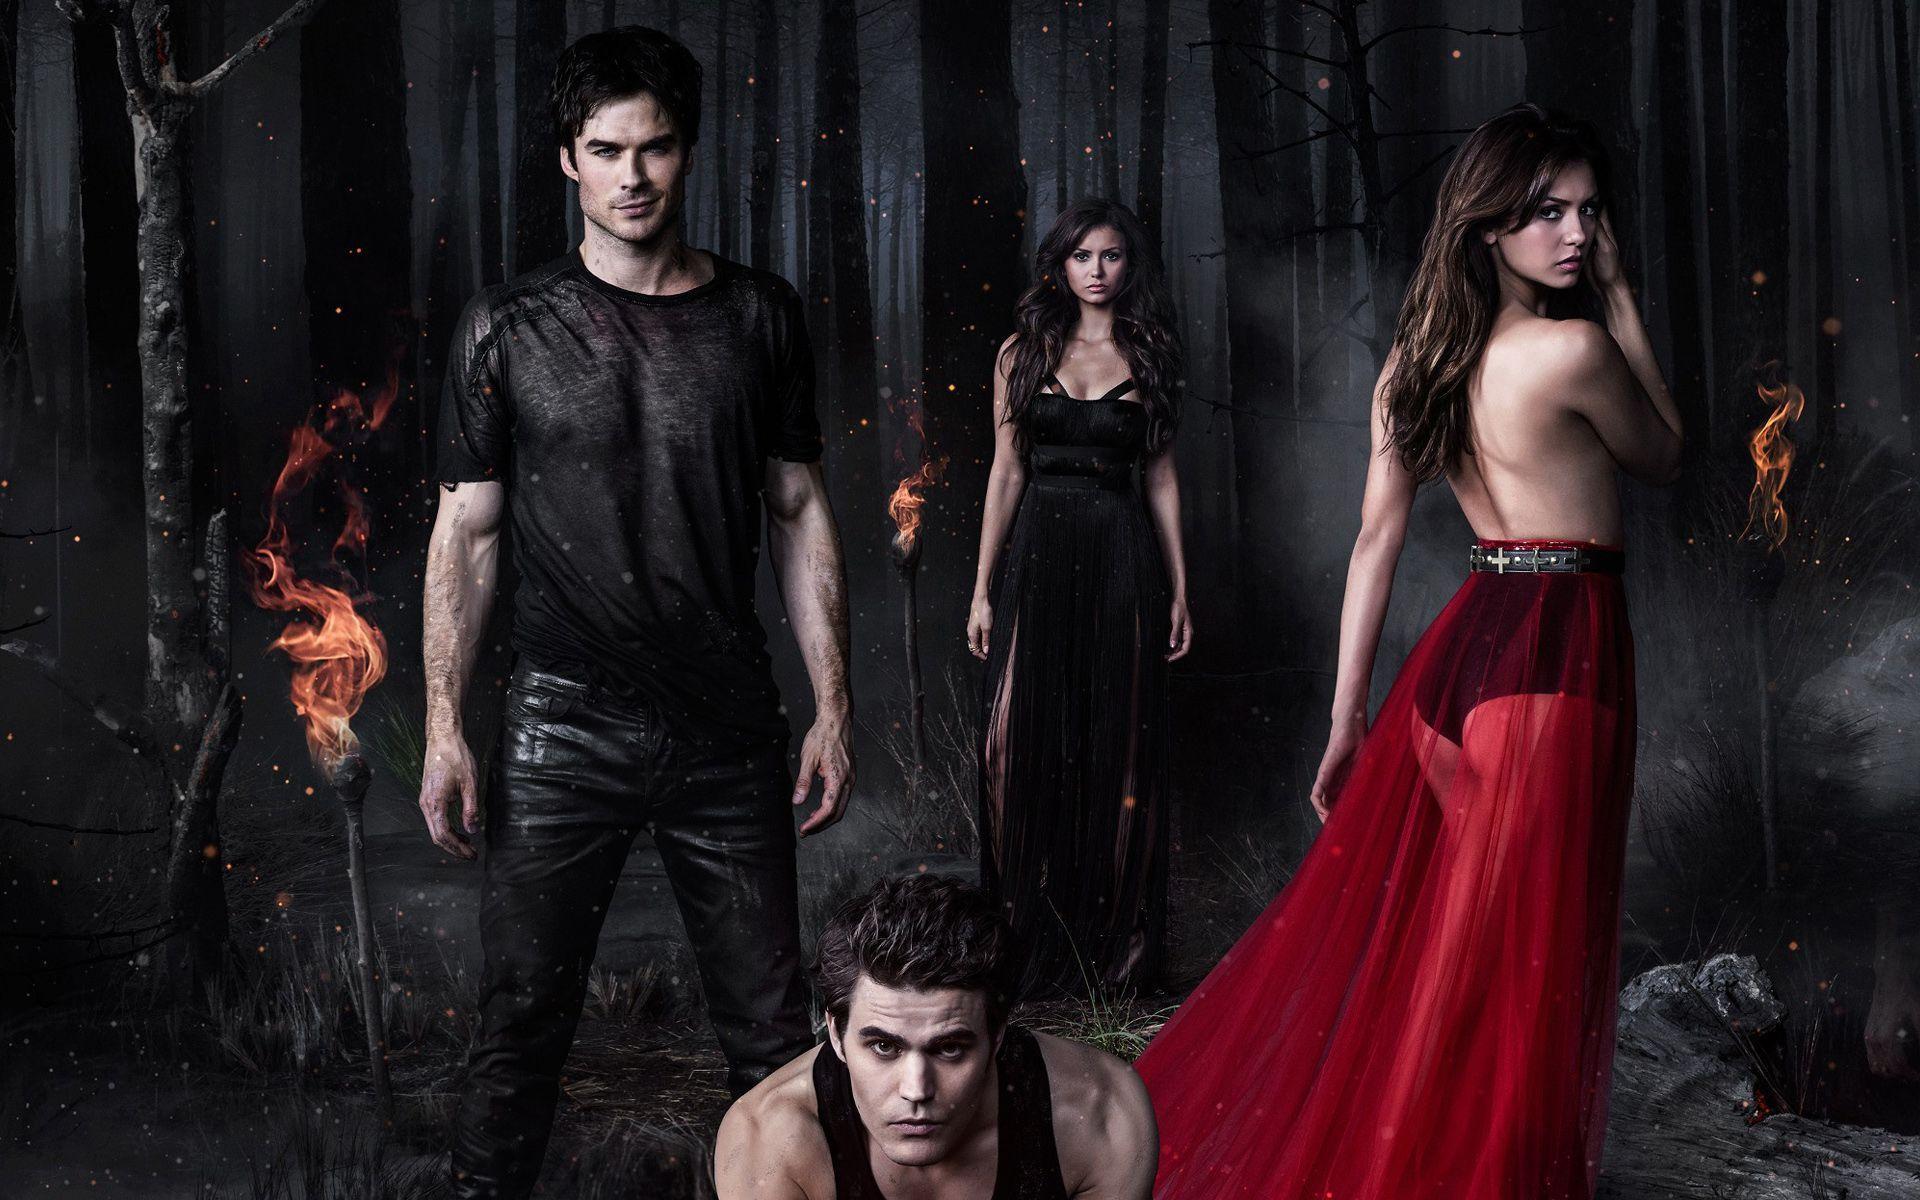 Wallpaper For > Vampire Diaries Season 6 Wallpaper